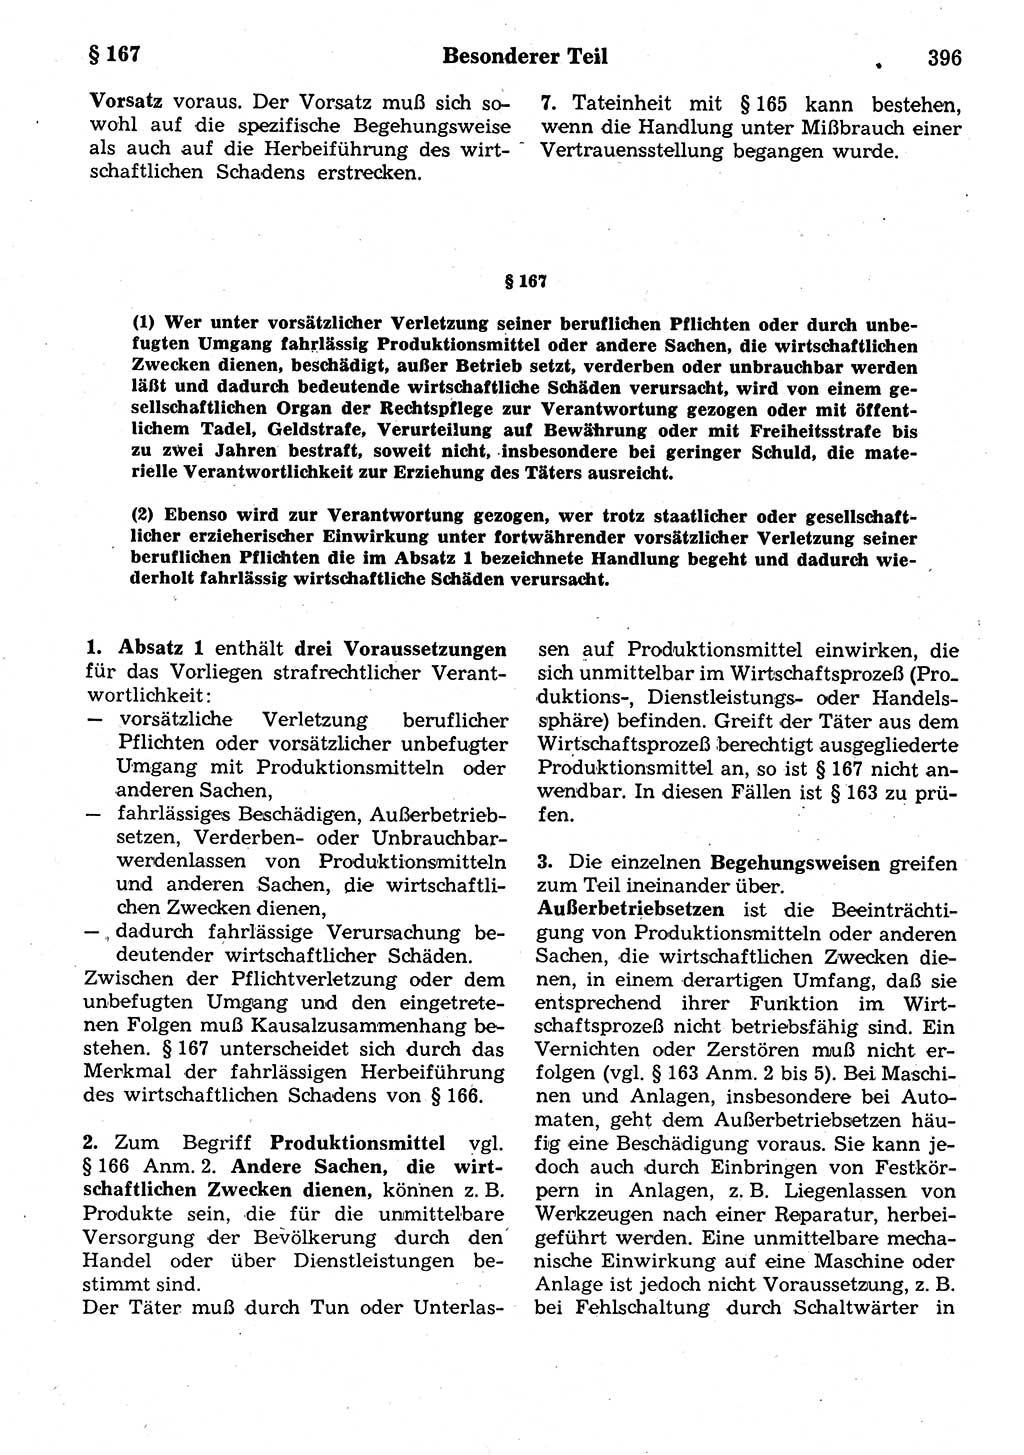 Strafrecht der Deutschen Demokratischen Republik (DDR), Kommentar zum Strafgesetzbuch (StGB) 1987, Seite 396 (Strafr. DDR Komm. StGB 1987, S. 396)